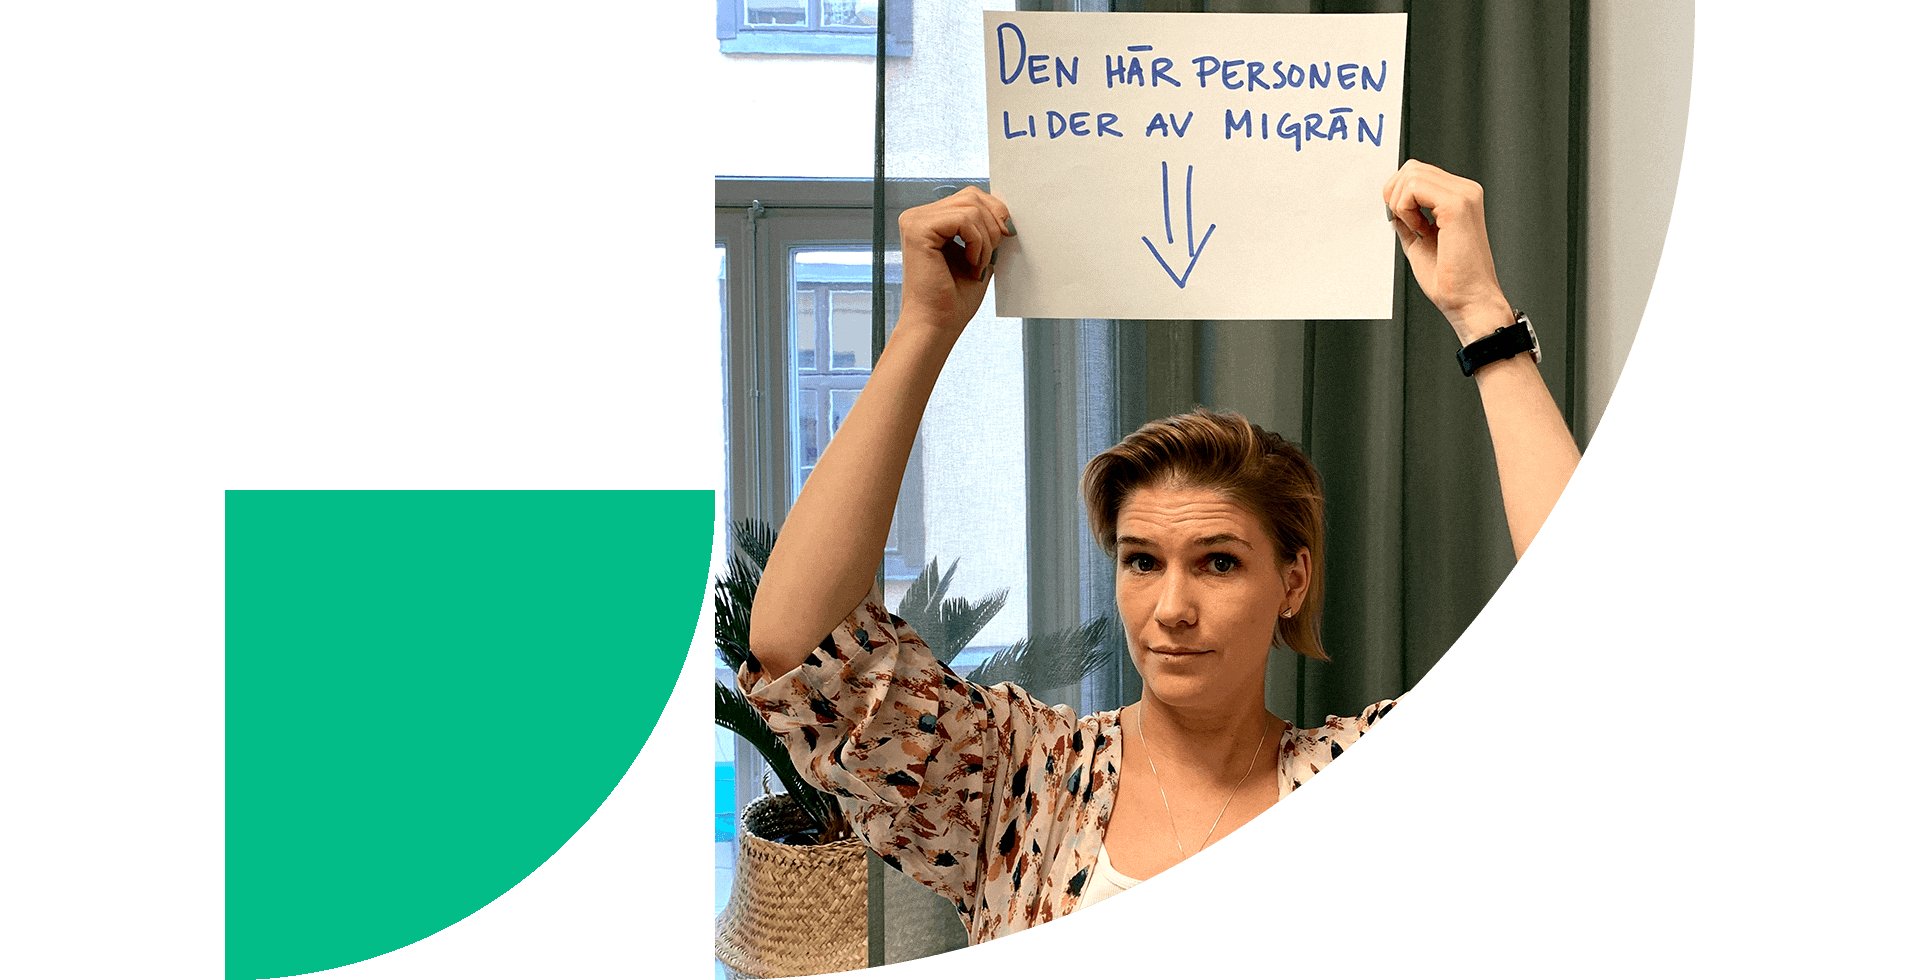 Marie Åberg håller i en skylt där det står "Den här personen lider av migrän" med en pil som pekar på henne själv